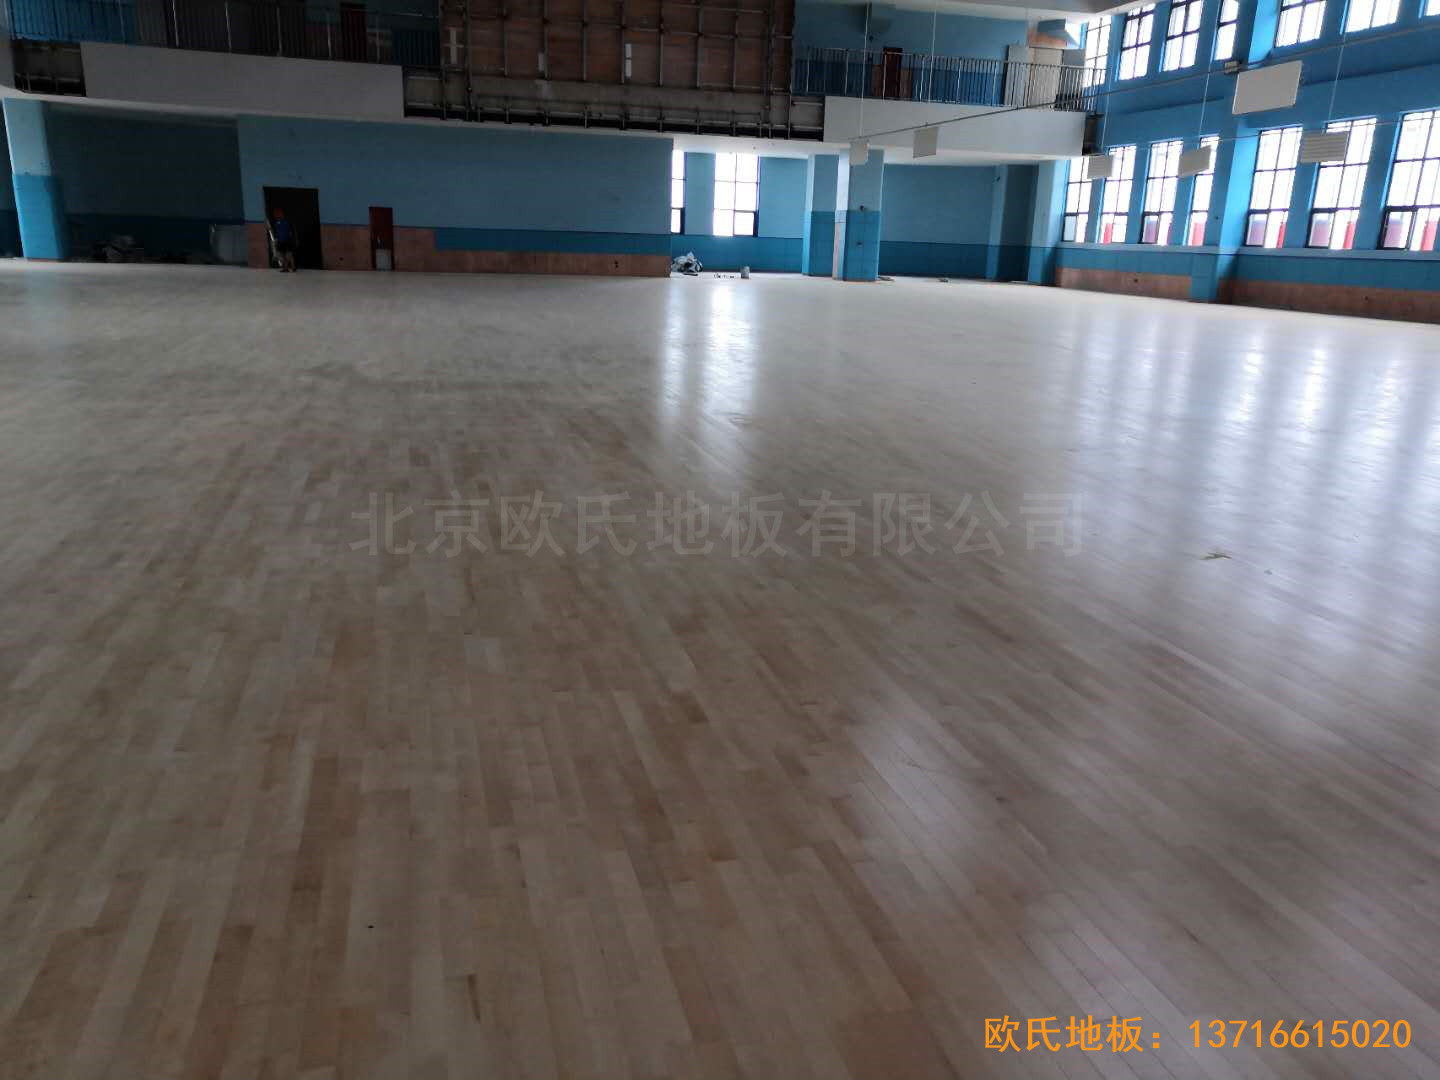 江西城西桥小学A区体育馆运动木地板铺装案例5